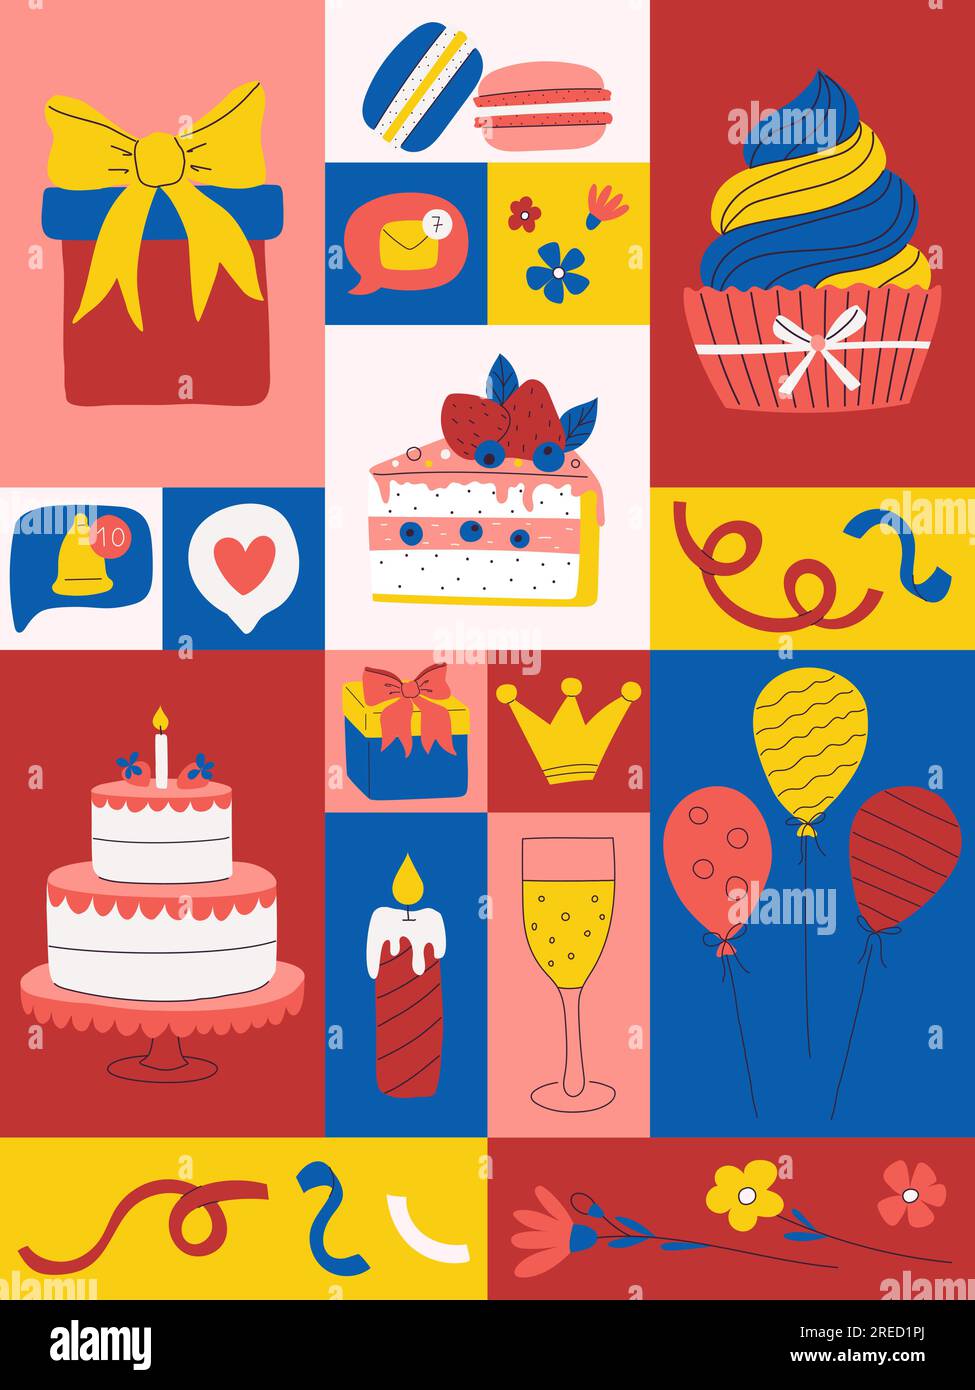 Sweets postcard Banque d'images vectorielles - Alamy